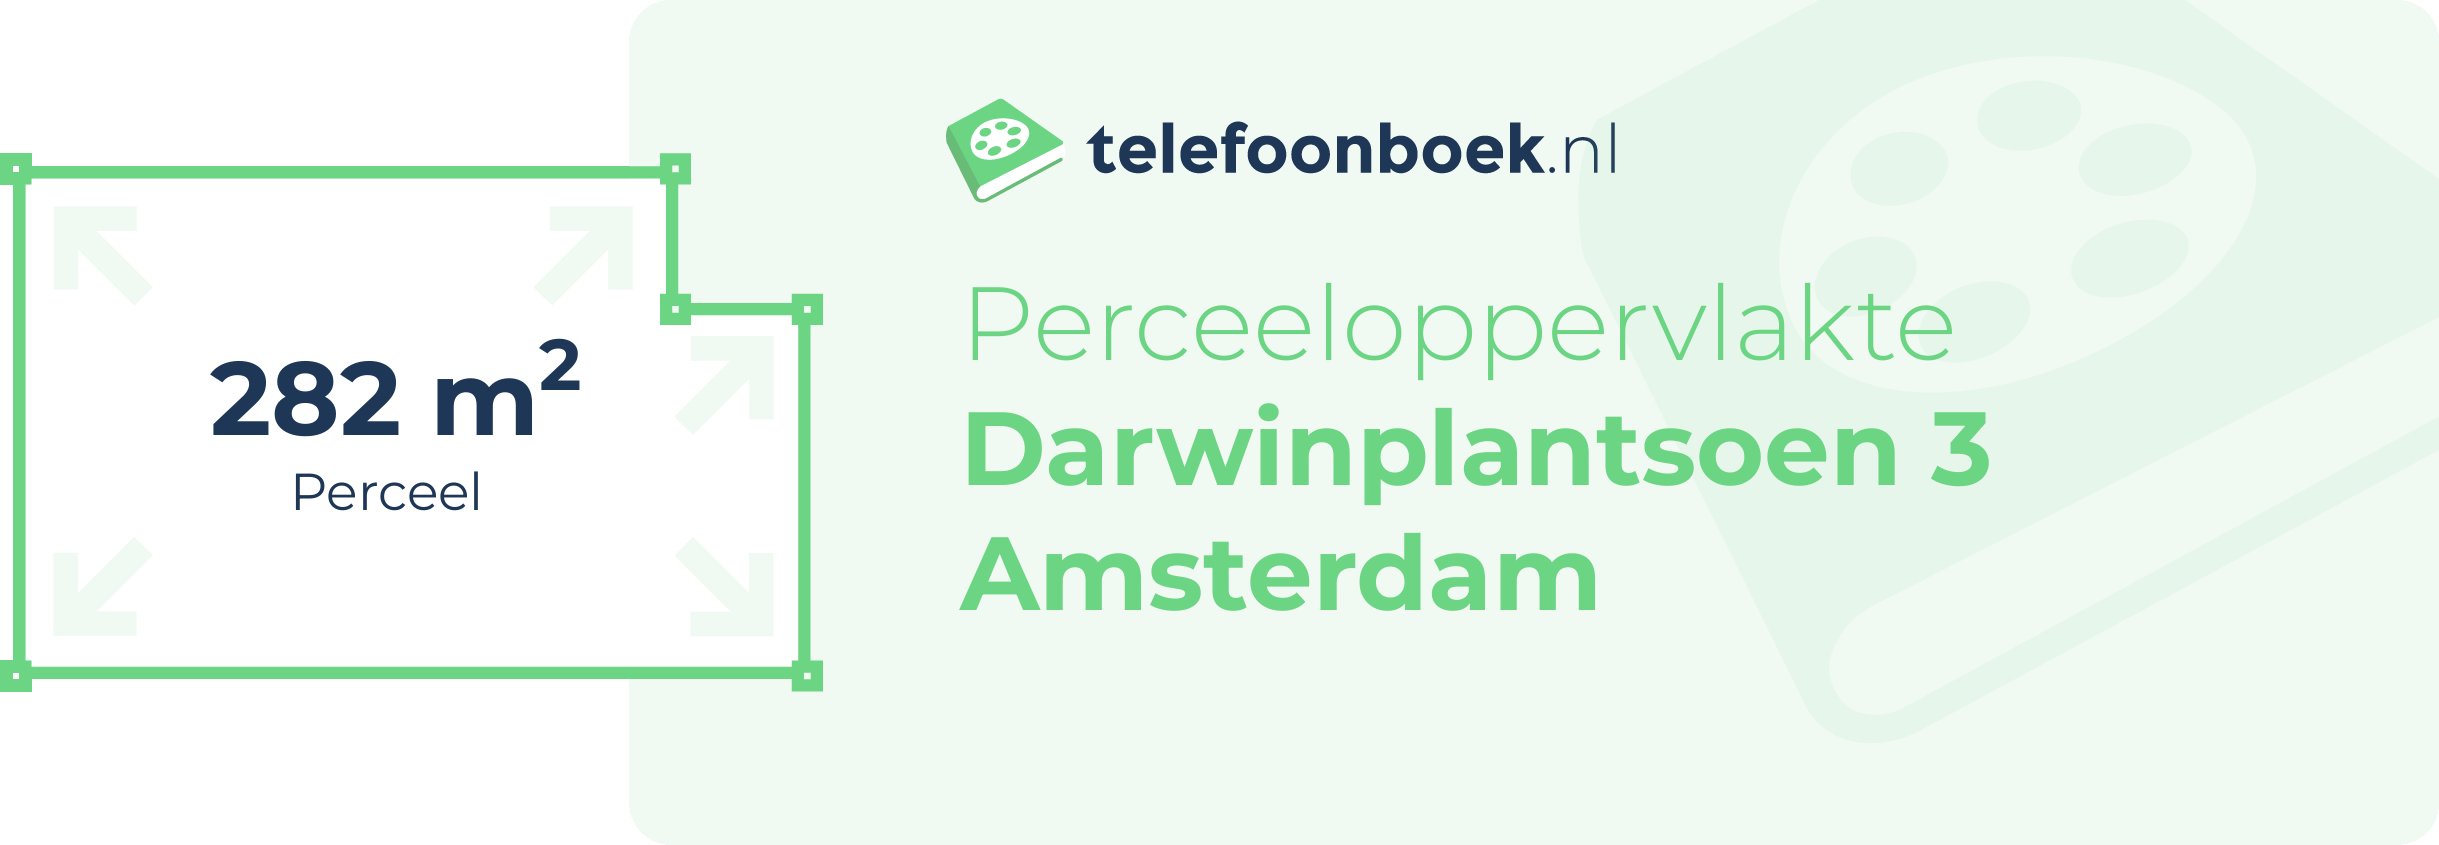 Perceeloppervlakte Darwinplantsoen 3 Amsterdam